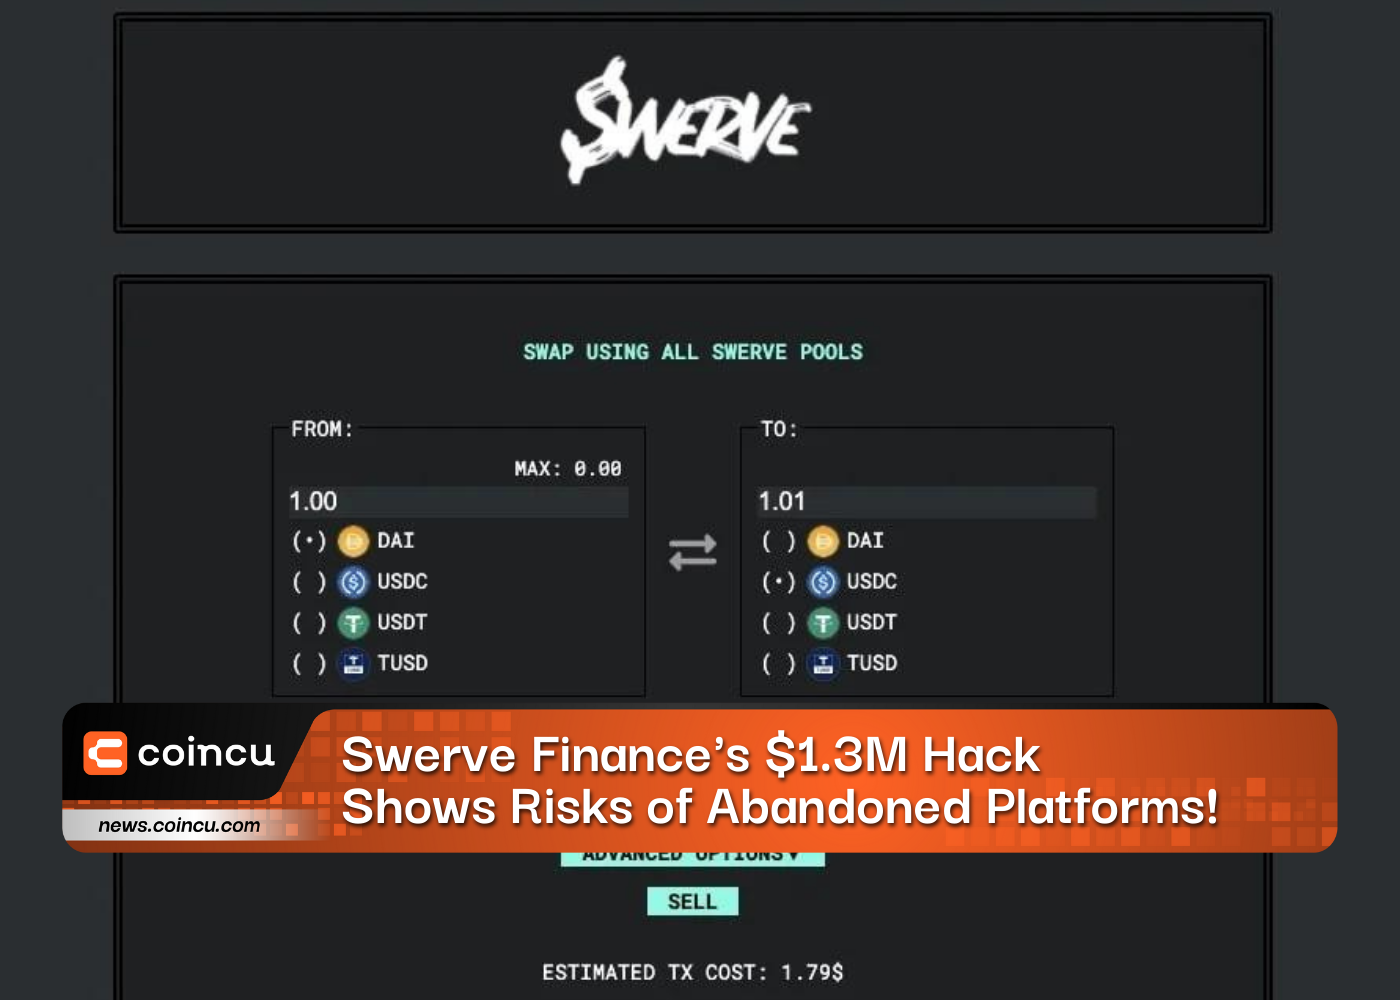 Swerve Finances 1.3M Hack